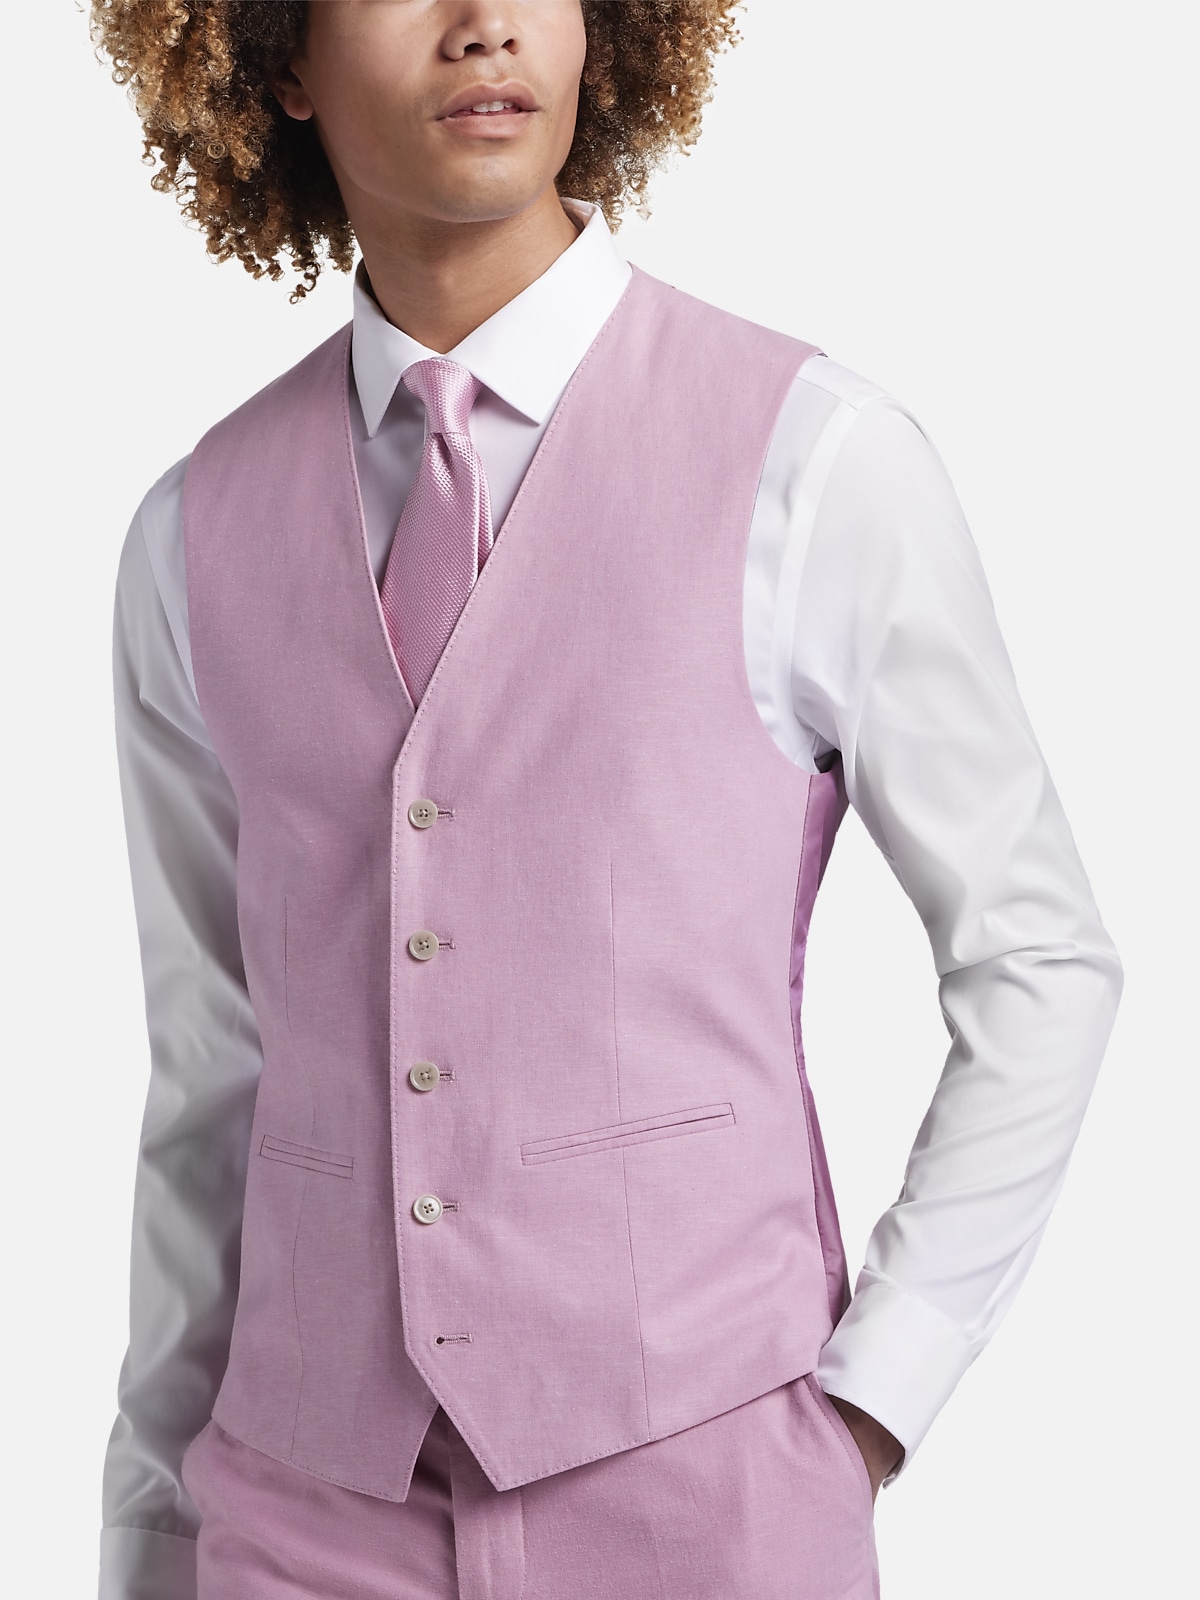 JOE Joseph Abboud Slim Fit Linen Blend Suit Separates Vest | All Sale ...